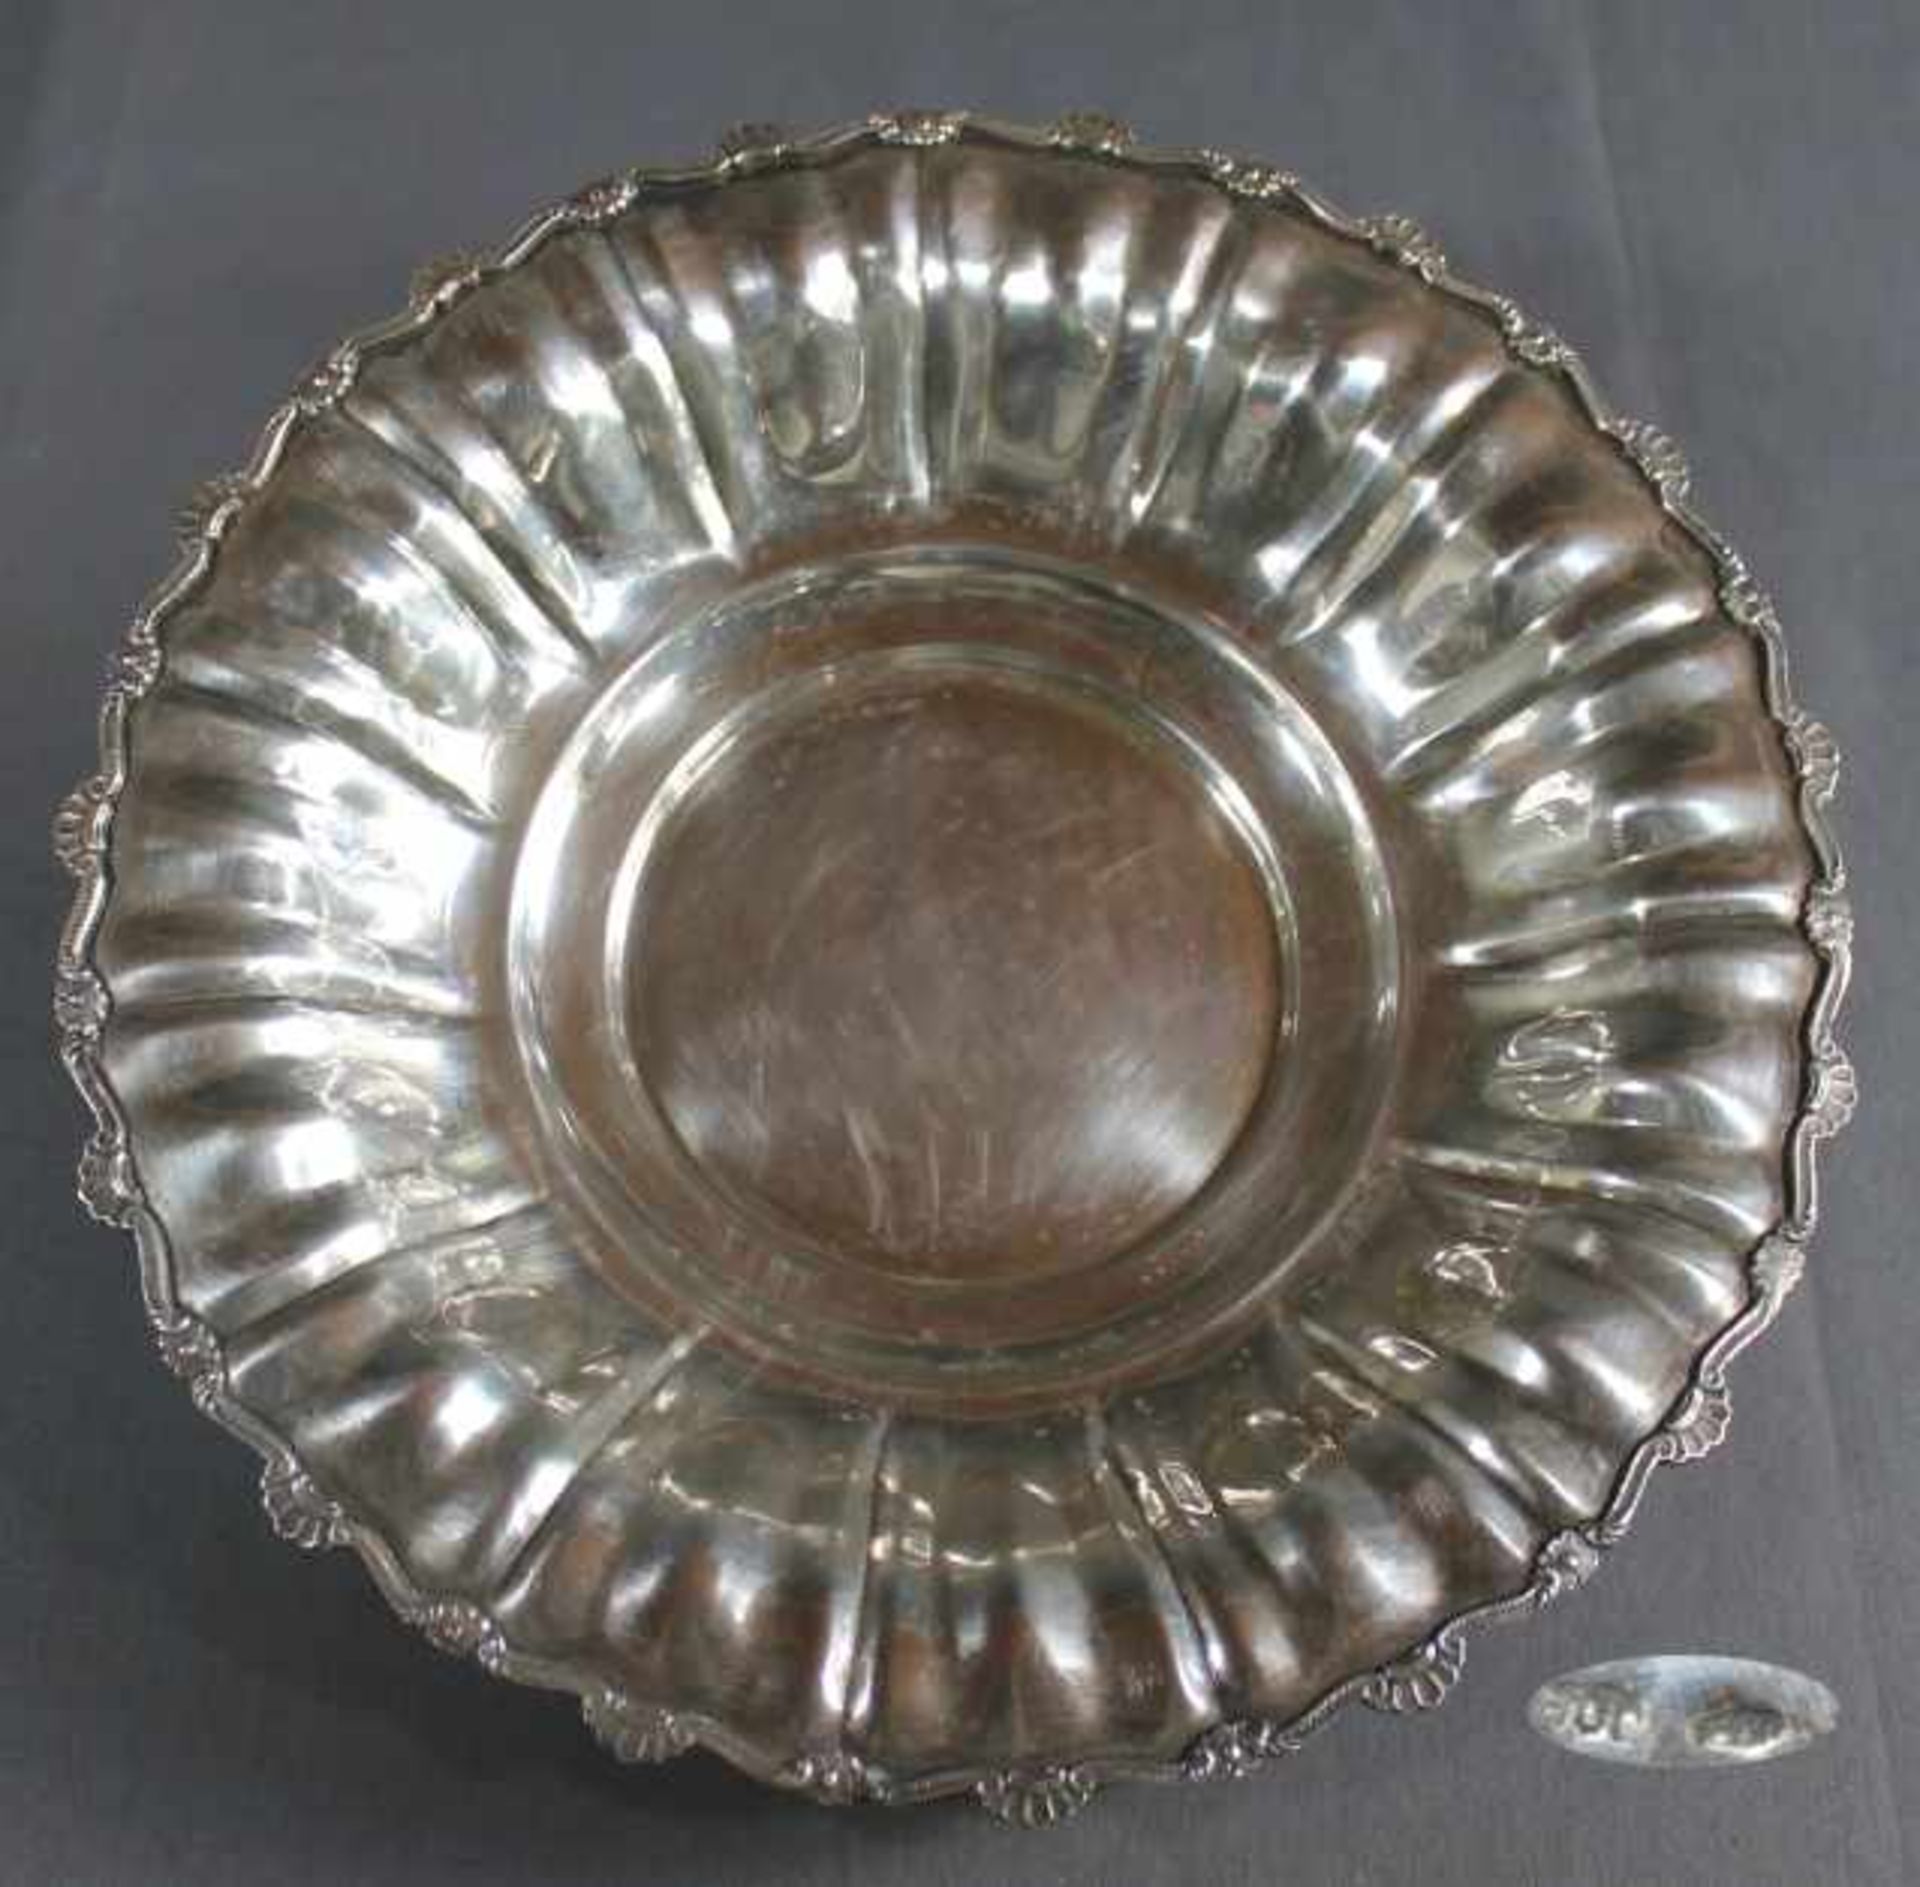 1 runde Schale Silber (800/000), punziert, auf 3 kleinen Füssen, Spiegel vertieft, Rand mit